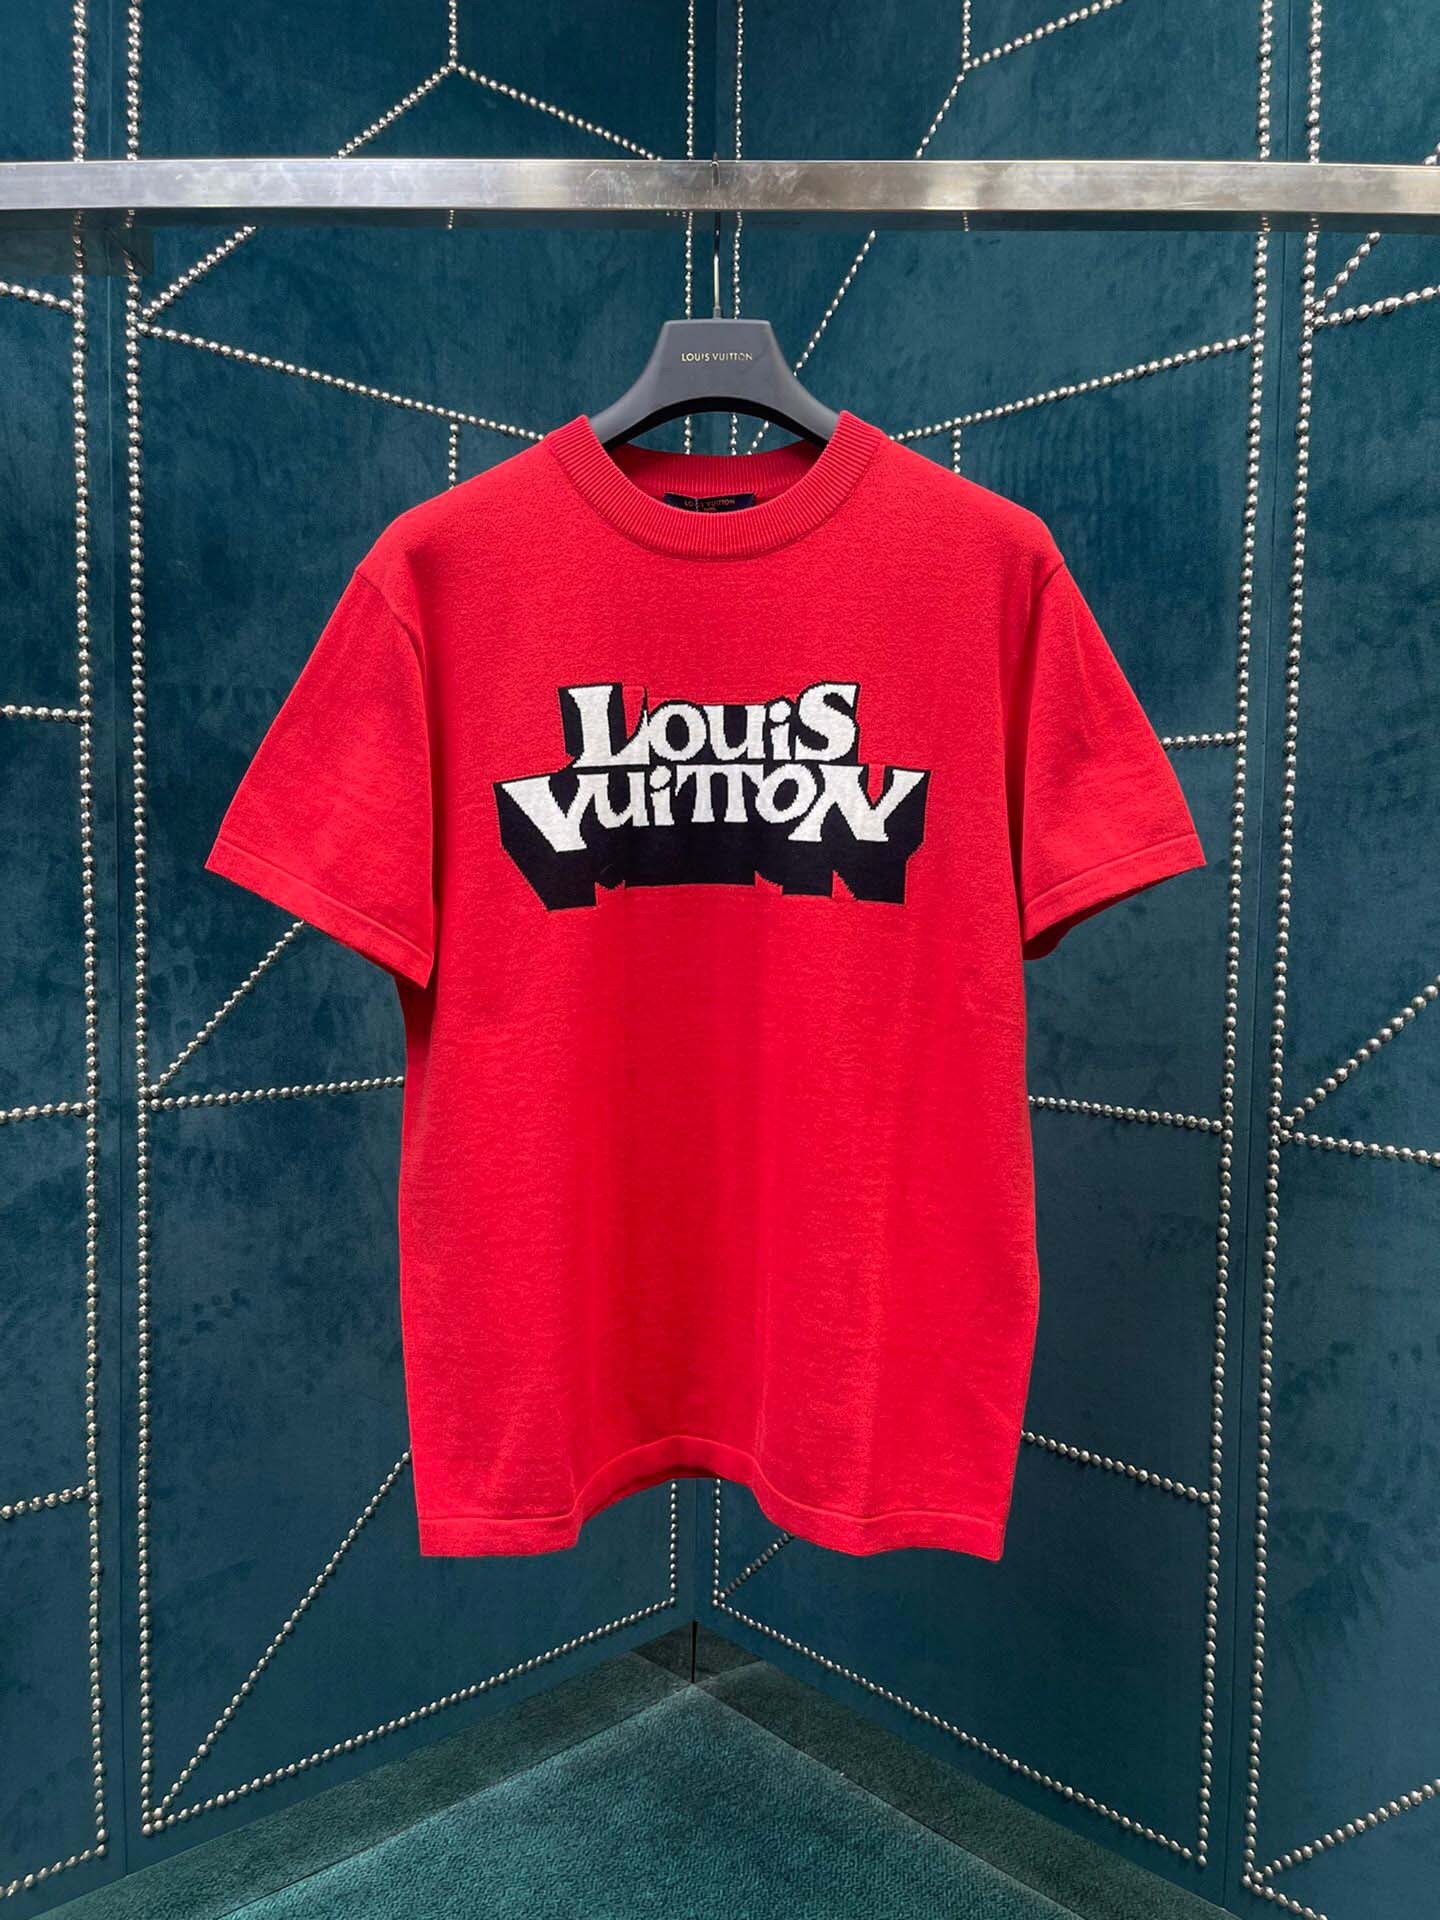 Phenomenal Camiseta Lois VUITTON-Serigrafía Fenomenal digital